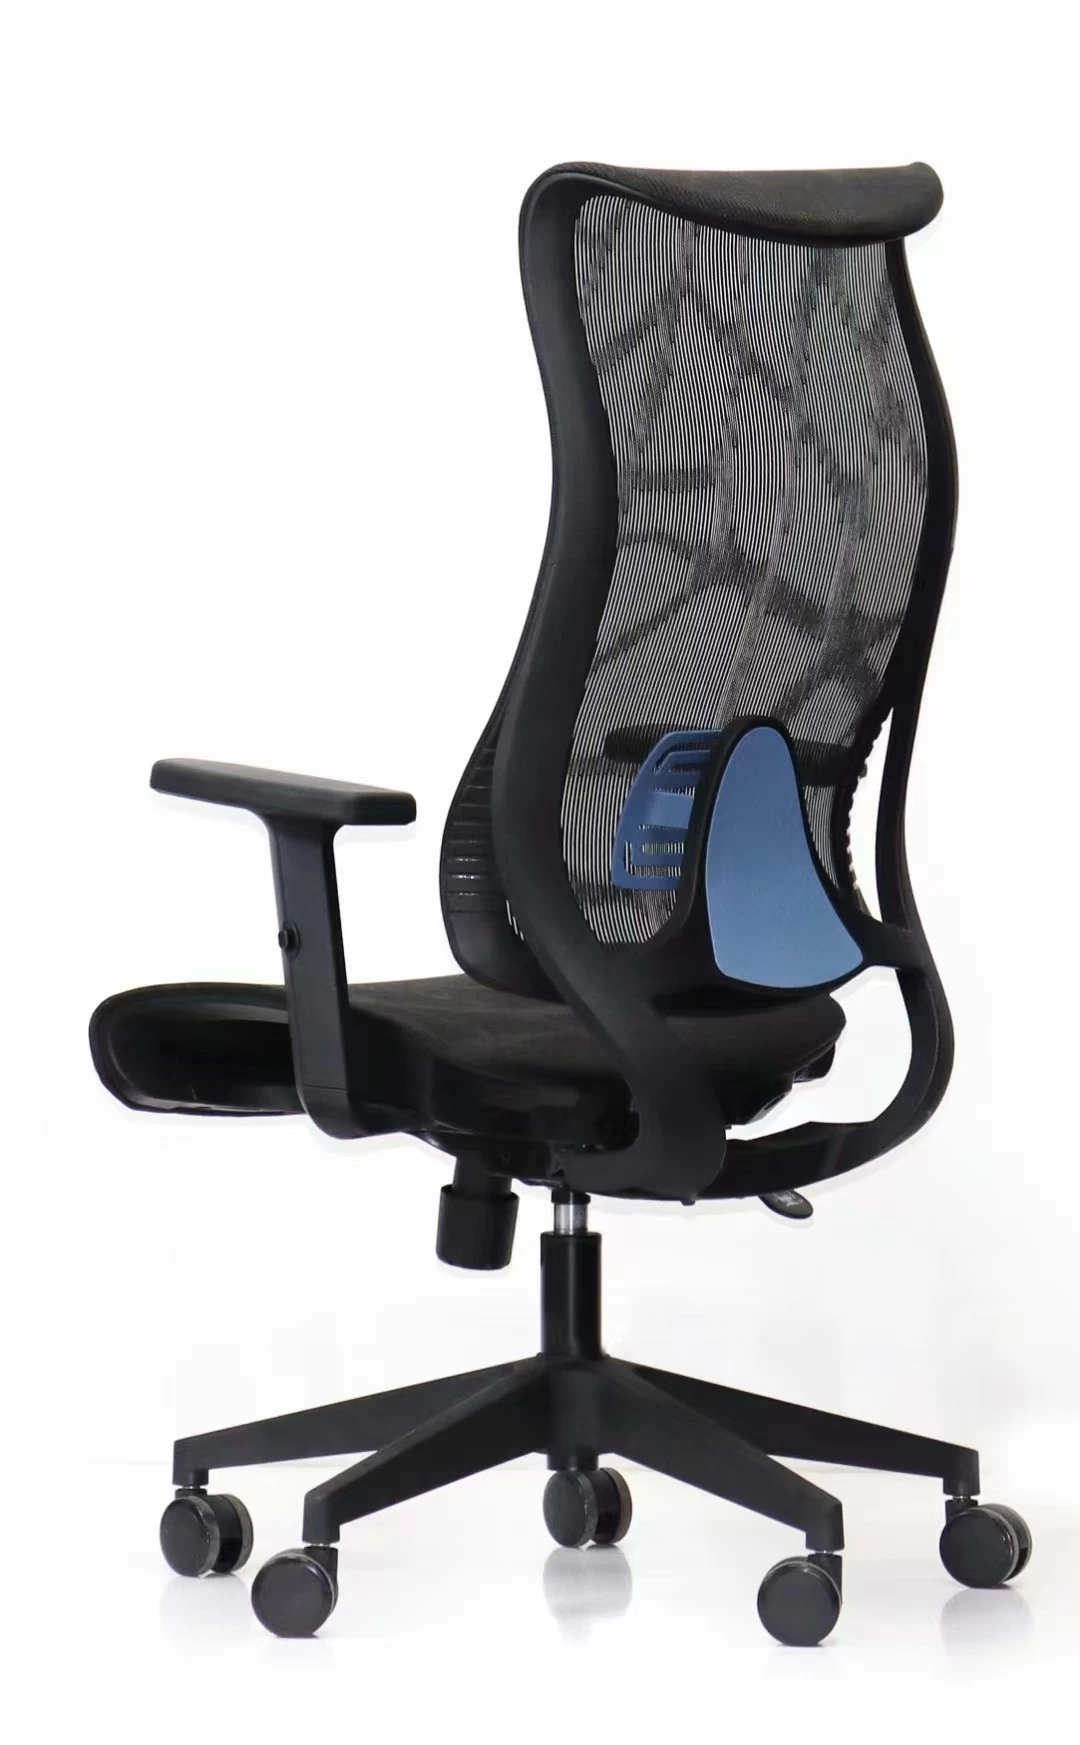 NewCity 639AF执行经理网状椅舒适的现代面料网椅高背部新设计可调式扶手椅Foshan China